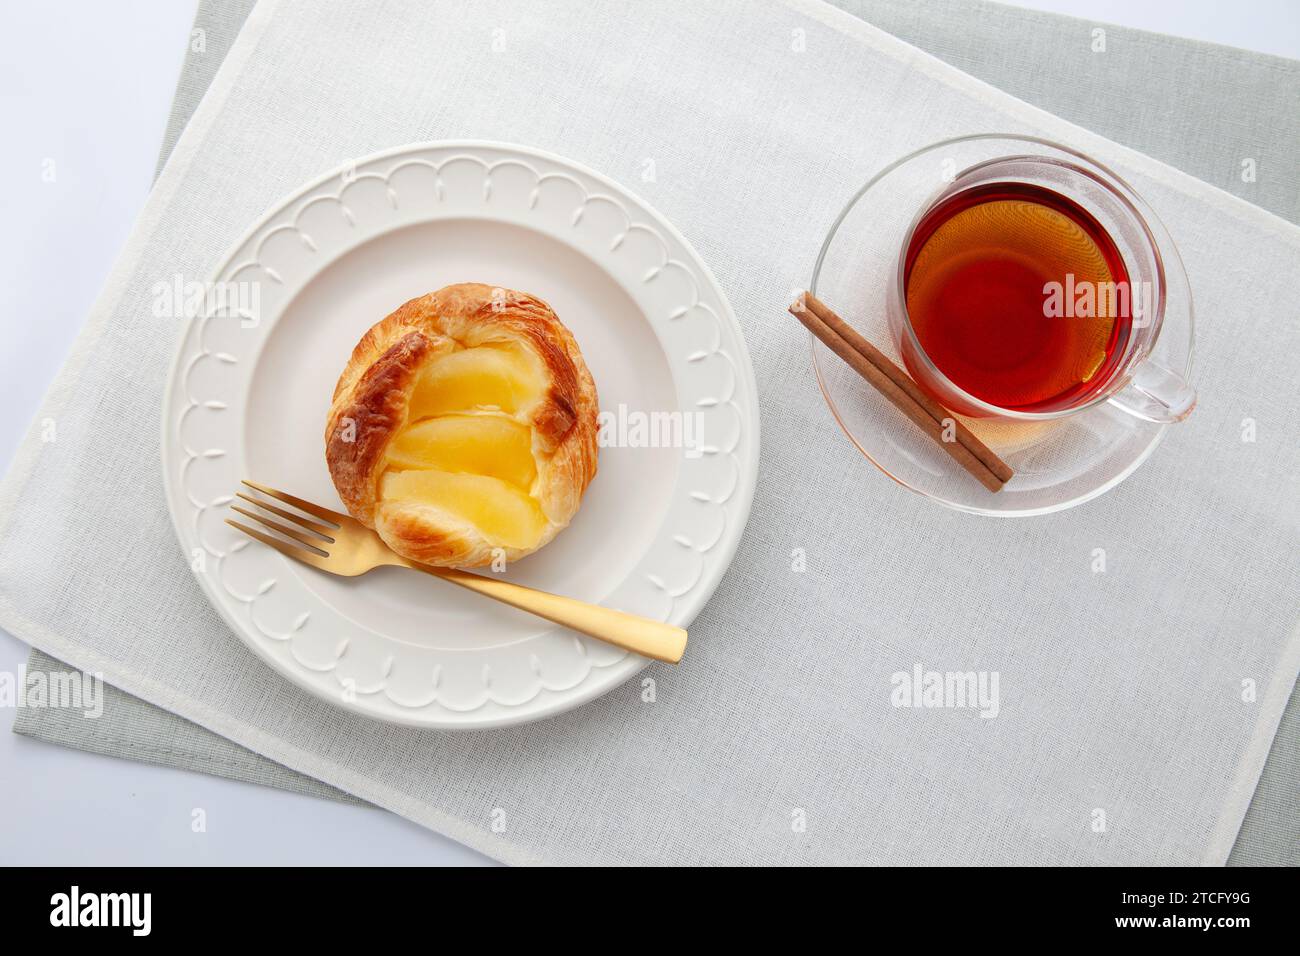 tarte aux pommes thé chaud sur la table Banque D'Images